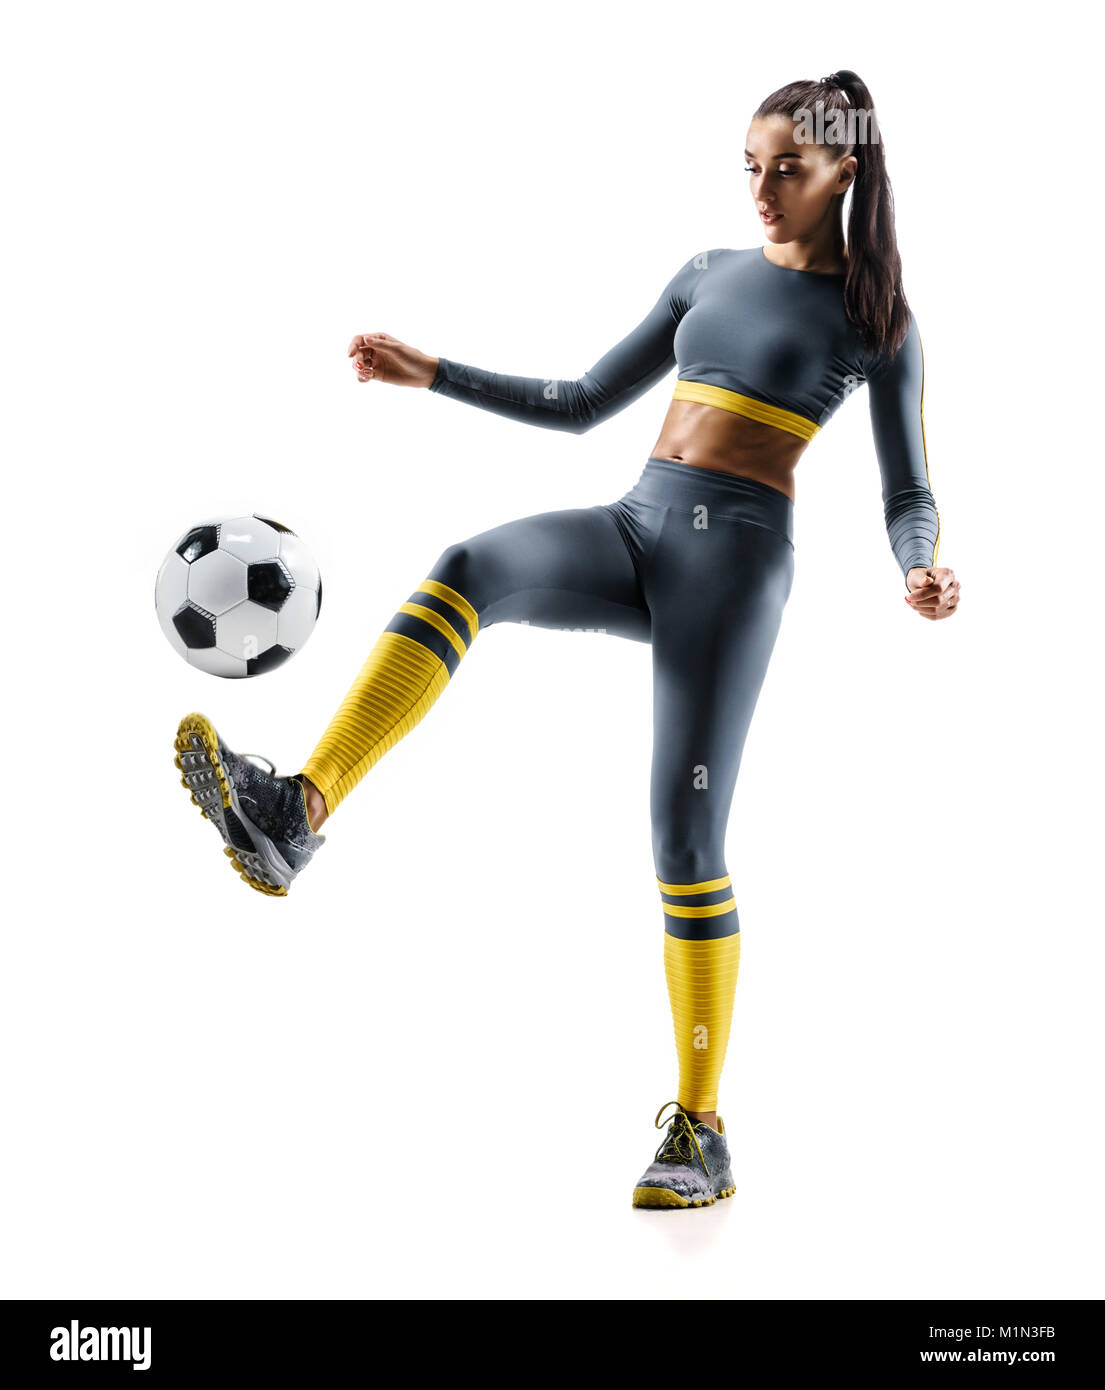 Football joueur de football en action. Photo de femme sportive dans les vêtements de sport. fond blanc isolé Le mouvement dynamique. Banque D'Images